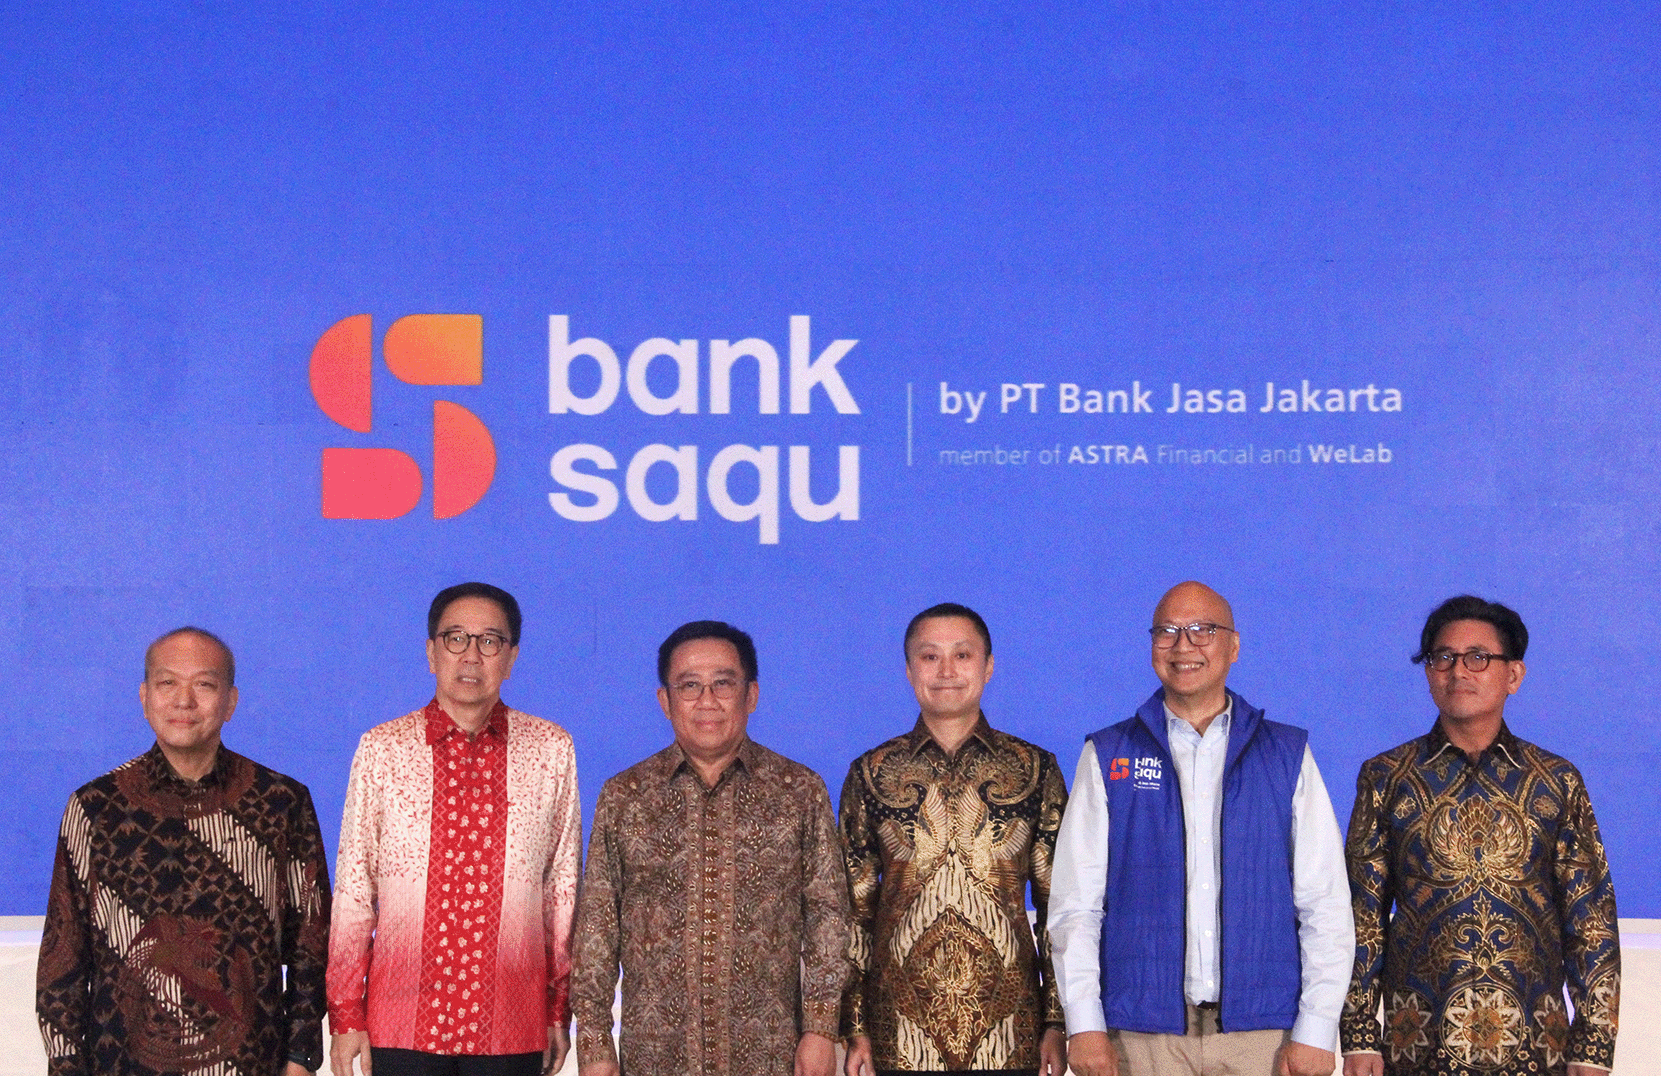 WeLab於印尼推出亞洲第二間數碼銀行Bank Saqu